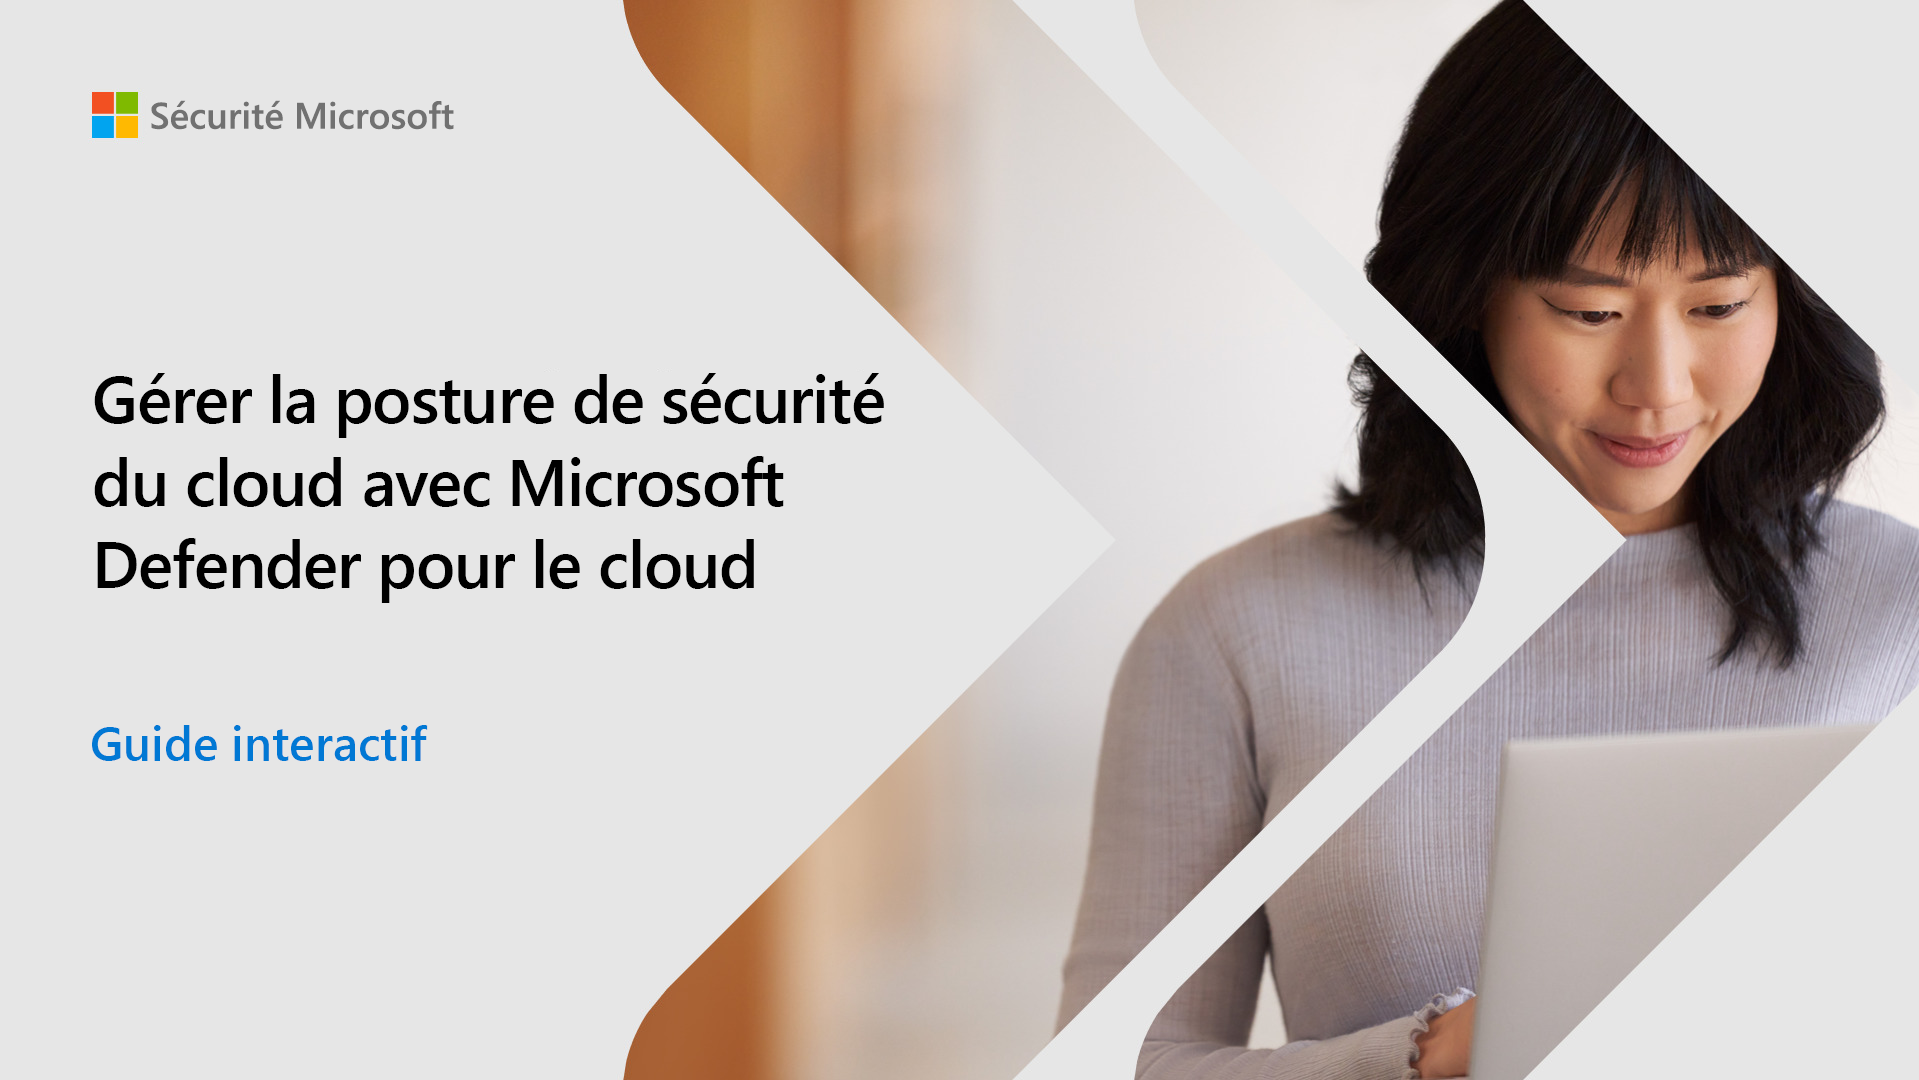 Capture d’écran de la page d’accueil du guide interactif pour gérer votre posture de sécurité cloud avec Microsoft Defender pour le cloud.